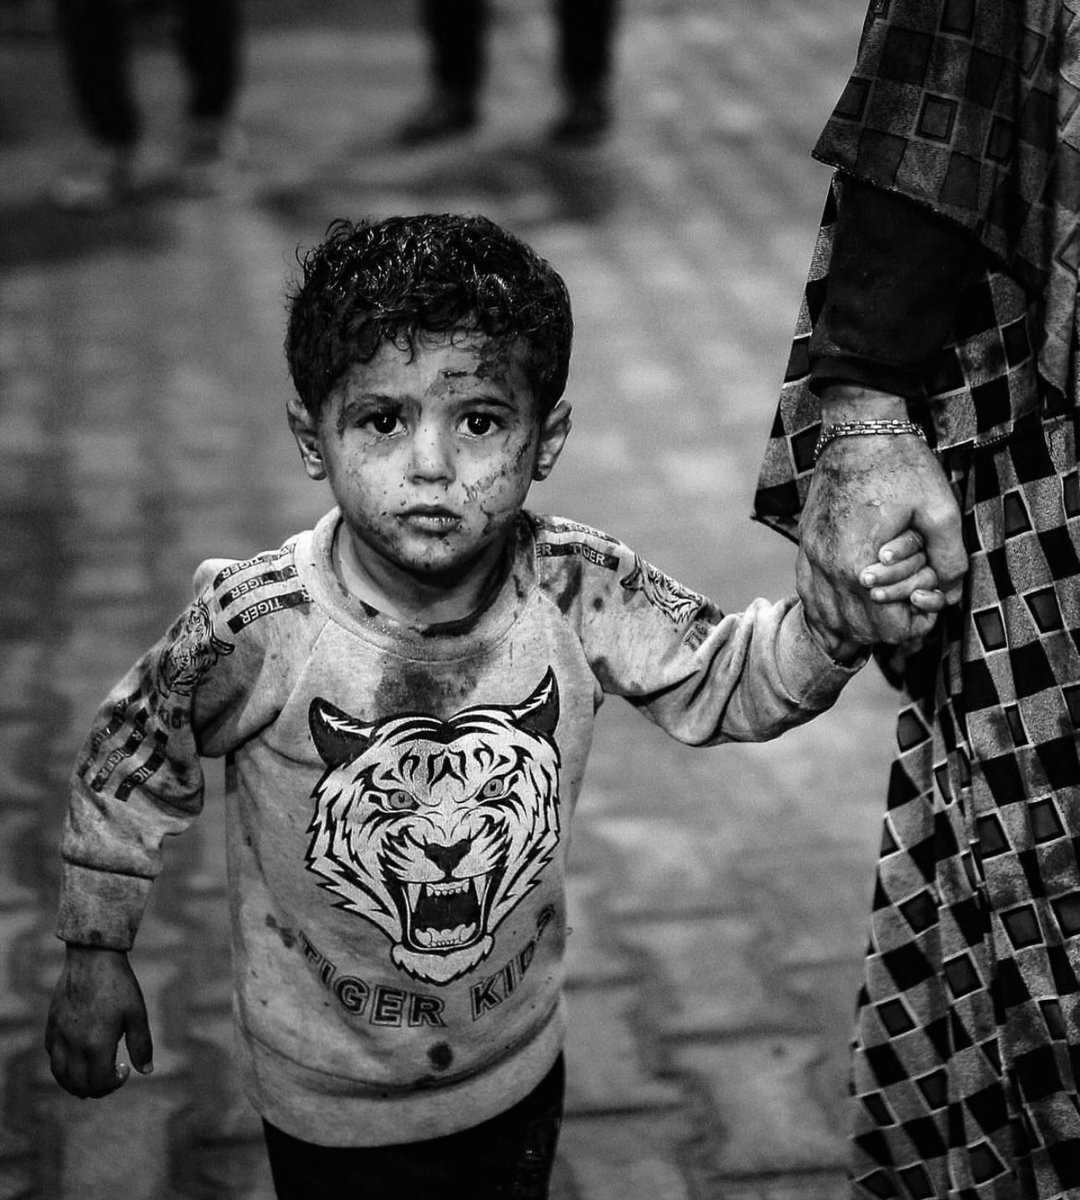 Masumların yardım çığlıklarını duymamak, onların acılarını görmezden gelmek, insanlığa yapılan bir ihanettir. Bu adaletsizliğe karşı durmalı, sesimizi yükselterek dünyaya Filistin halkının haklı mücadelesini duyurmalıyız. #HandsOffRafah